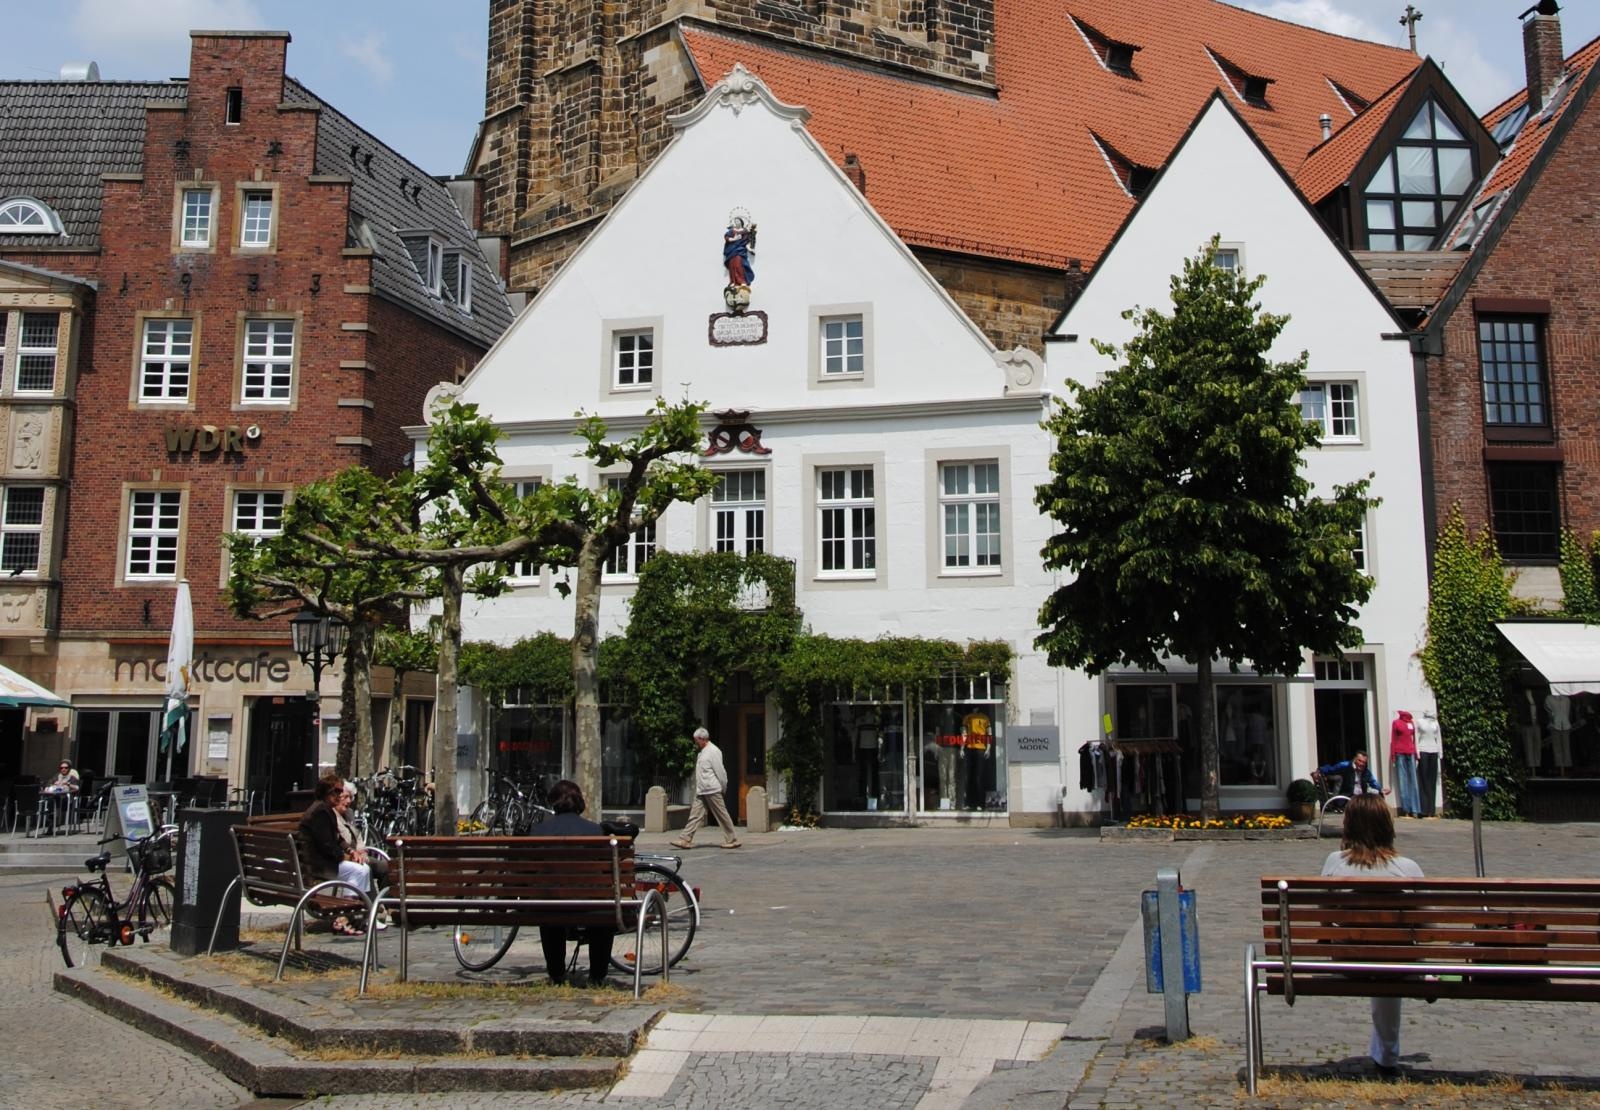 Der Marktplatz in Rheine